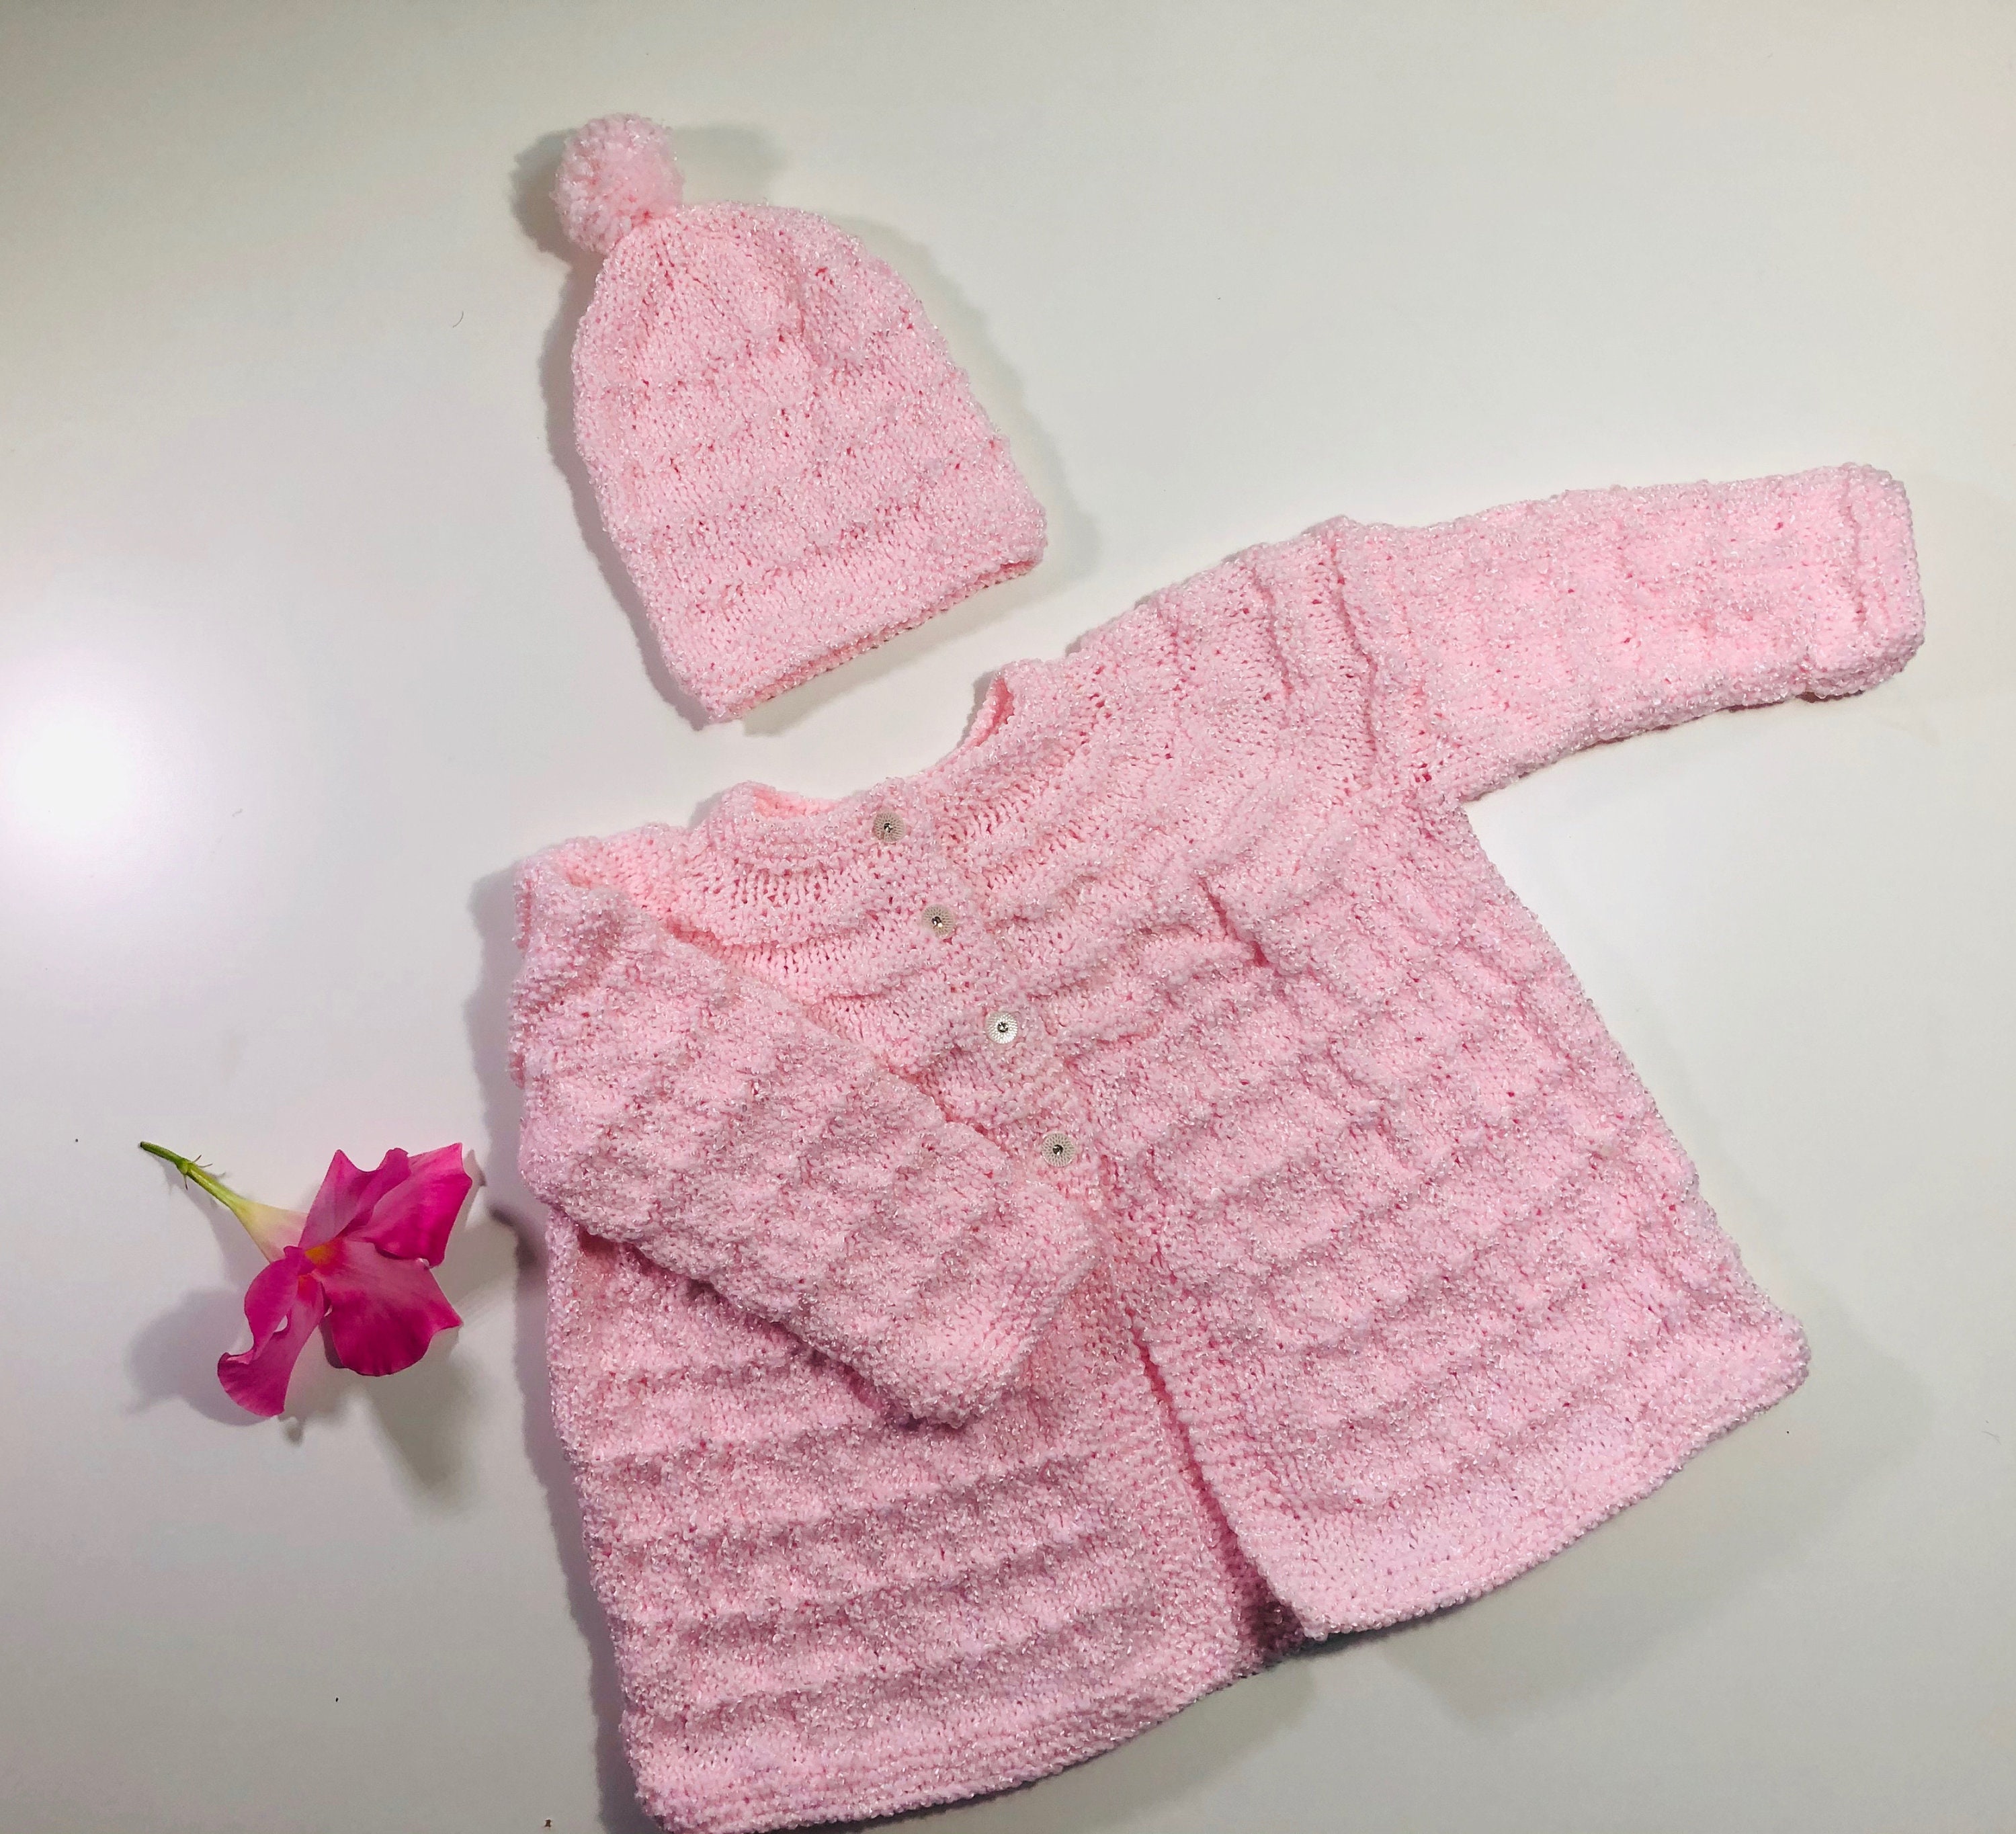 Baby CardiganBaby sweater Peplum Style Handknitted | Etsy